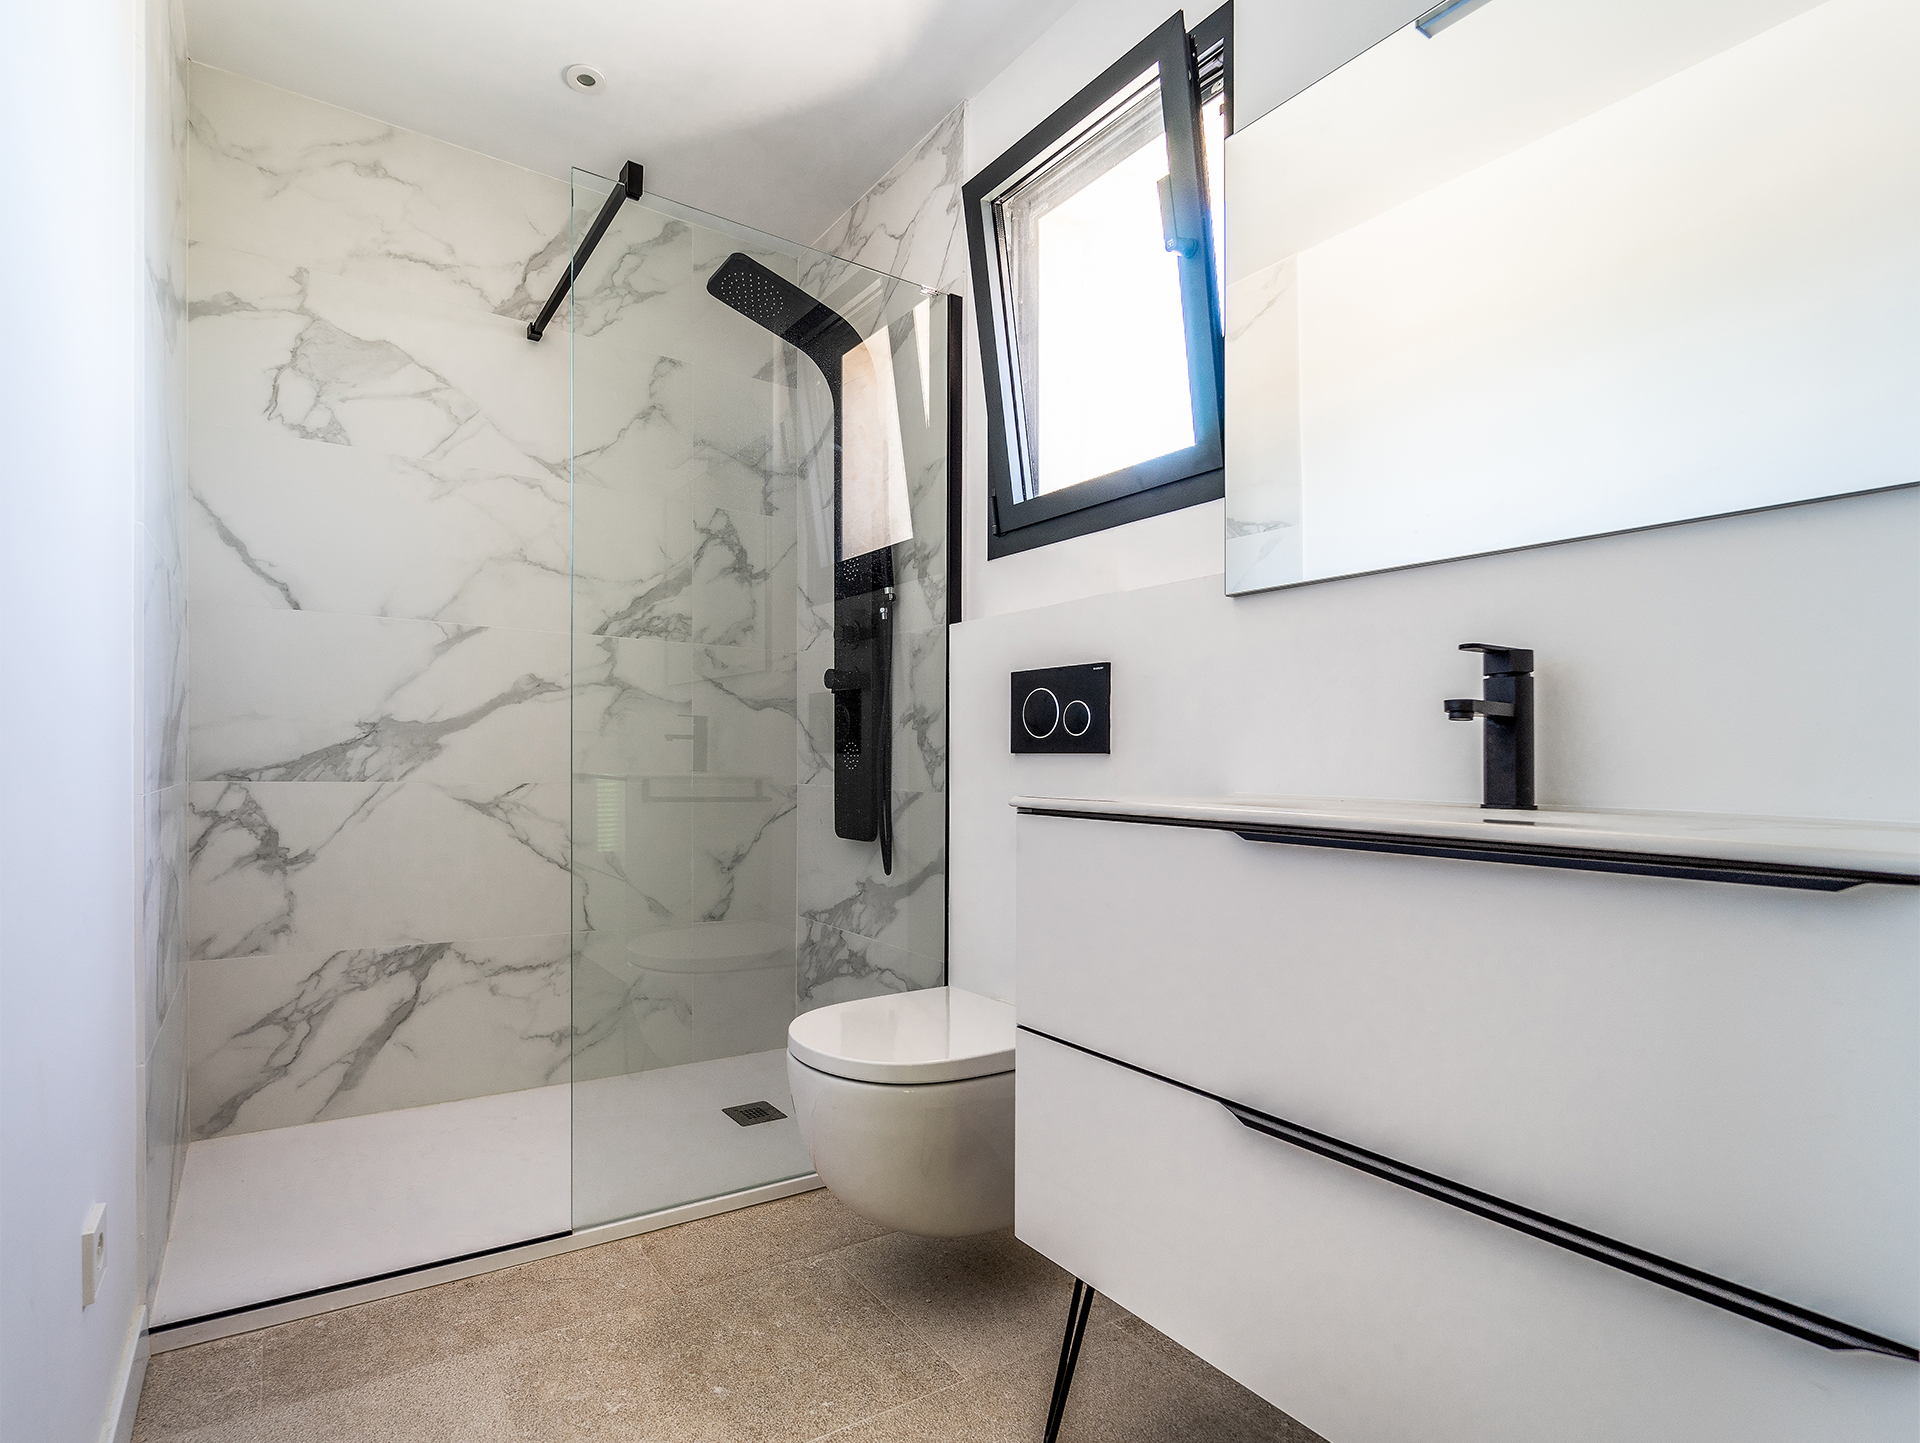 Дизайн ванной комнаты 3 кв м: фото без туалета, идеи интерьера маленькой ванной